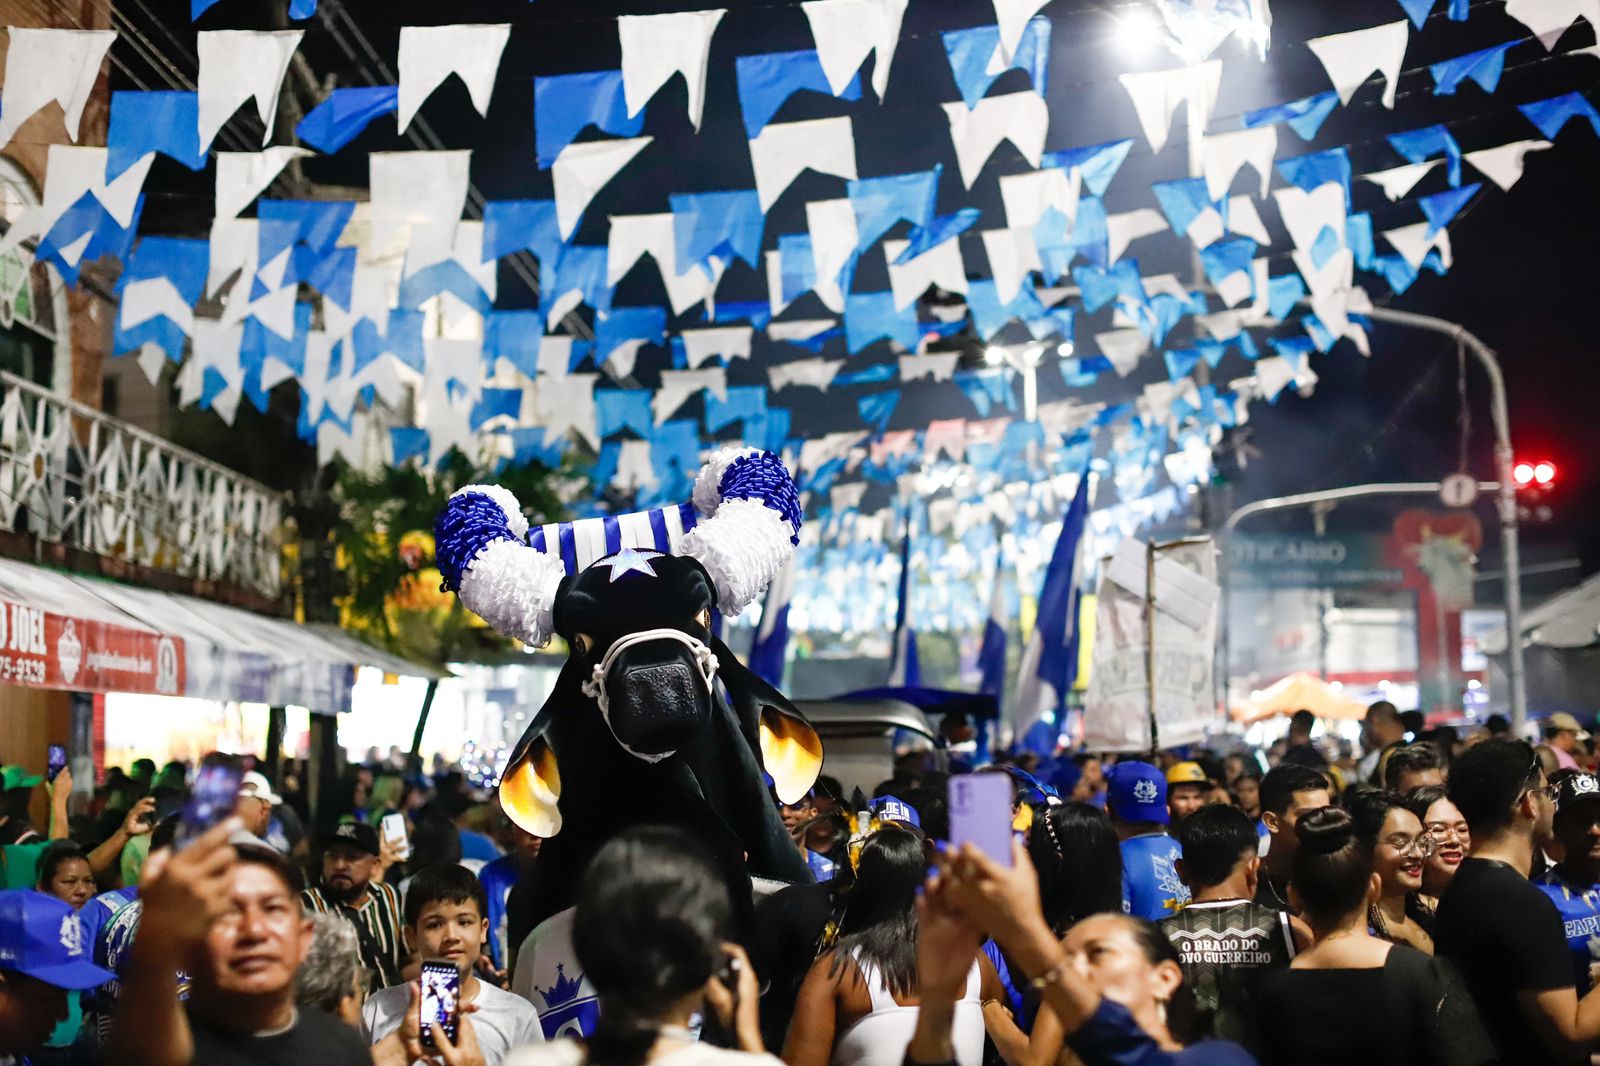 Boi de Rua: Caprichoso arrasta multidão azulada pelas ruas de Parintins